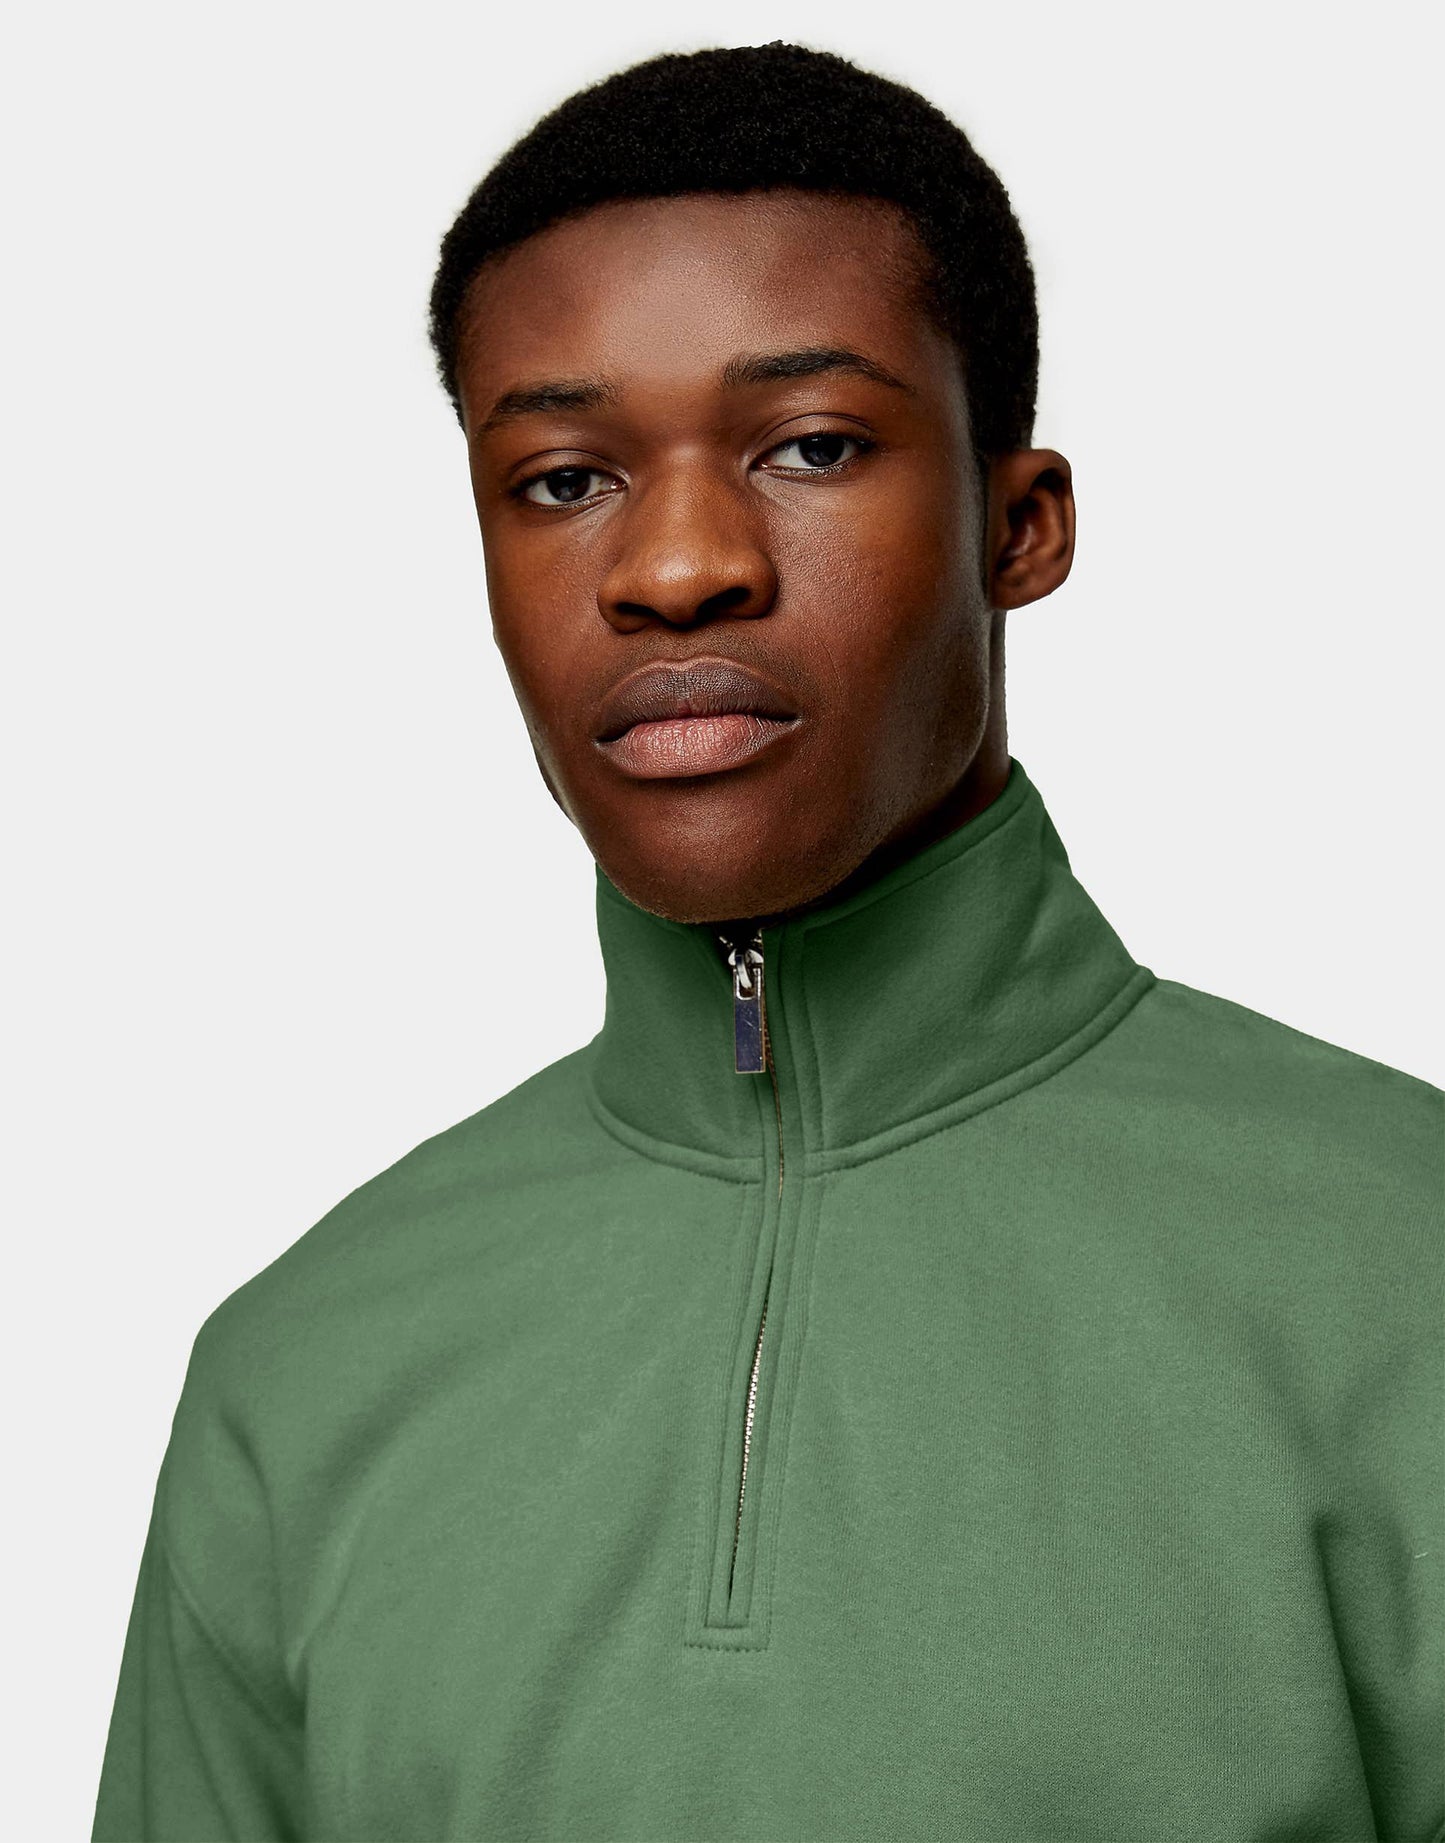 Hemsters Moss Green Zip Sweatshirt For Mens